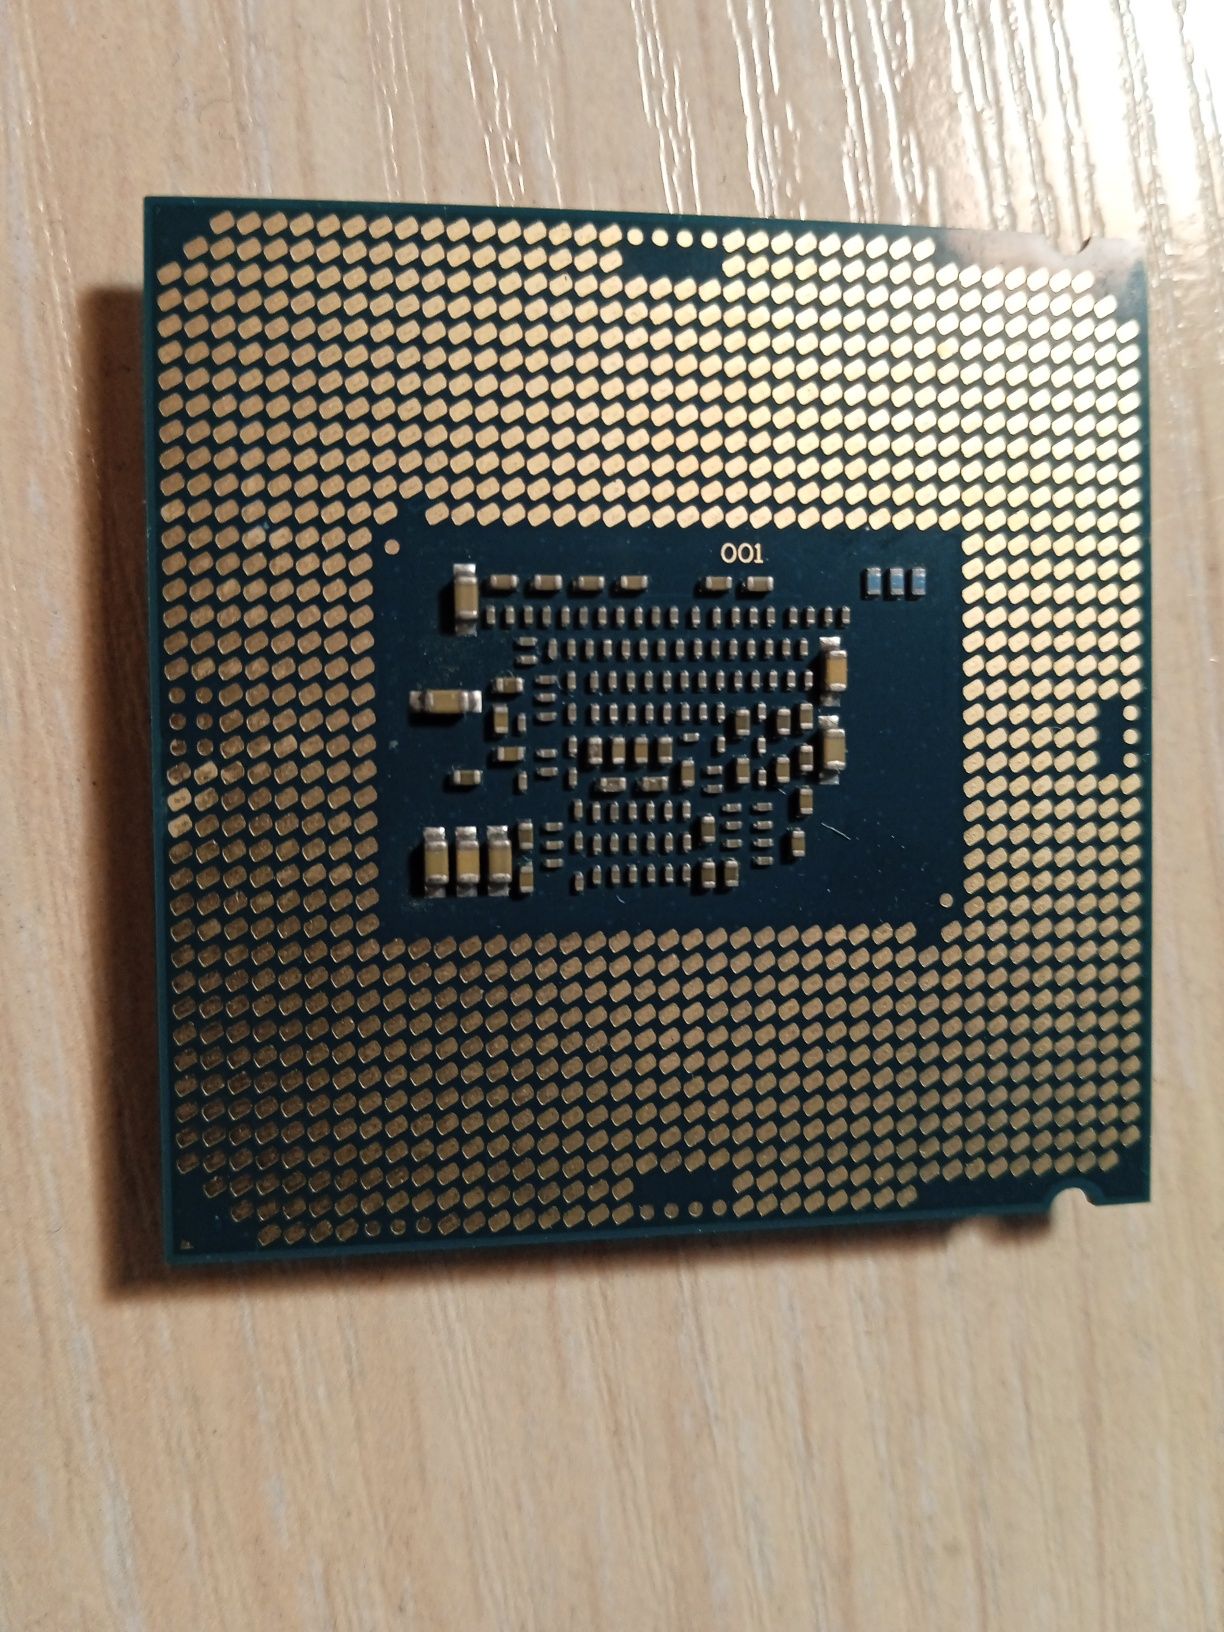 Процесор Intel celeron G3900